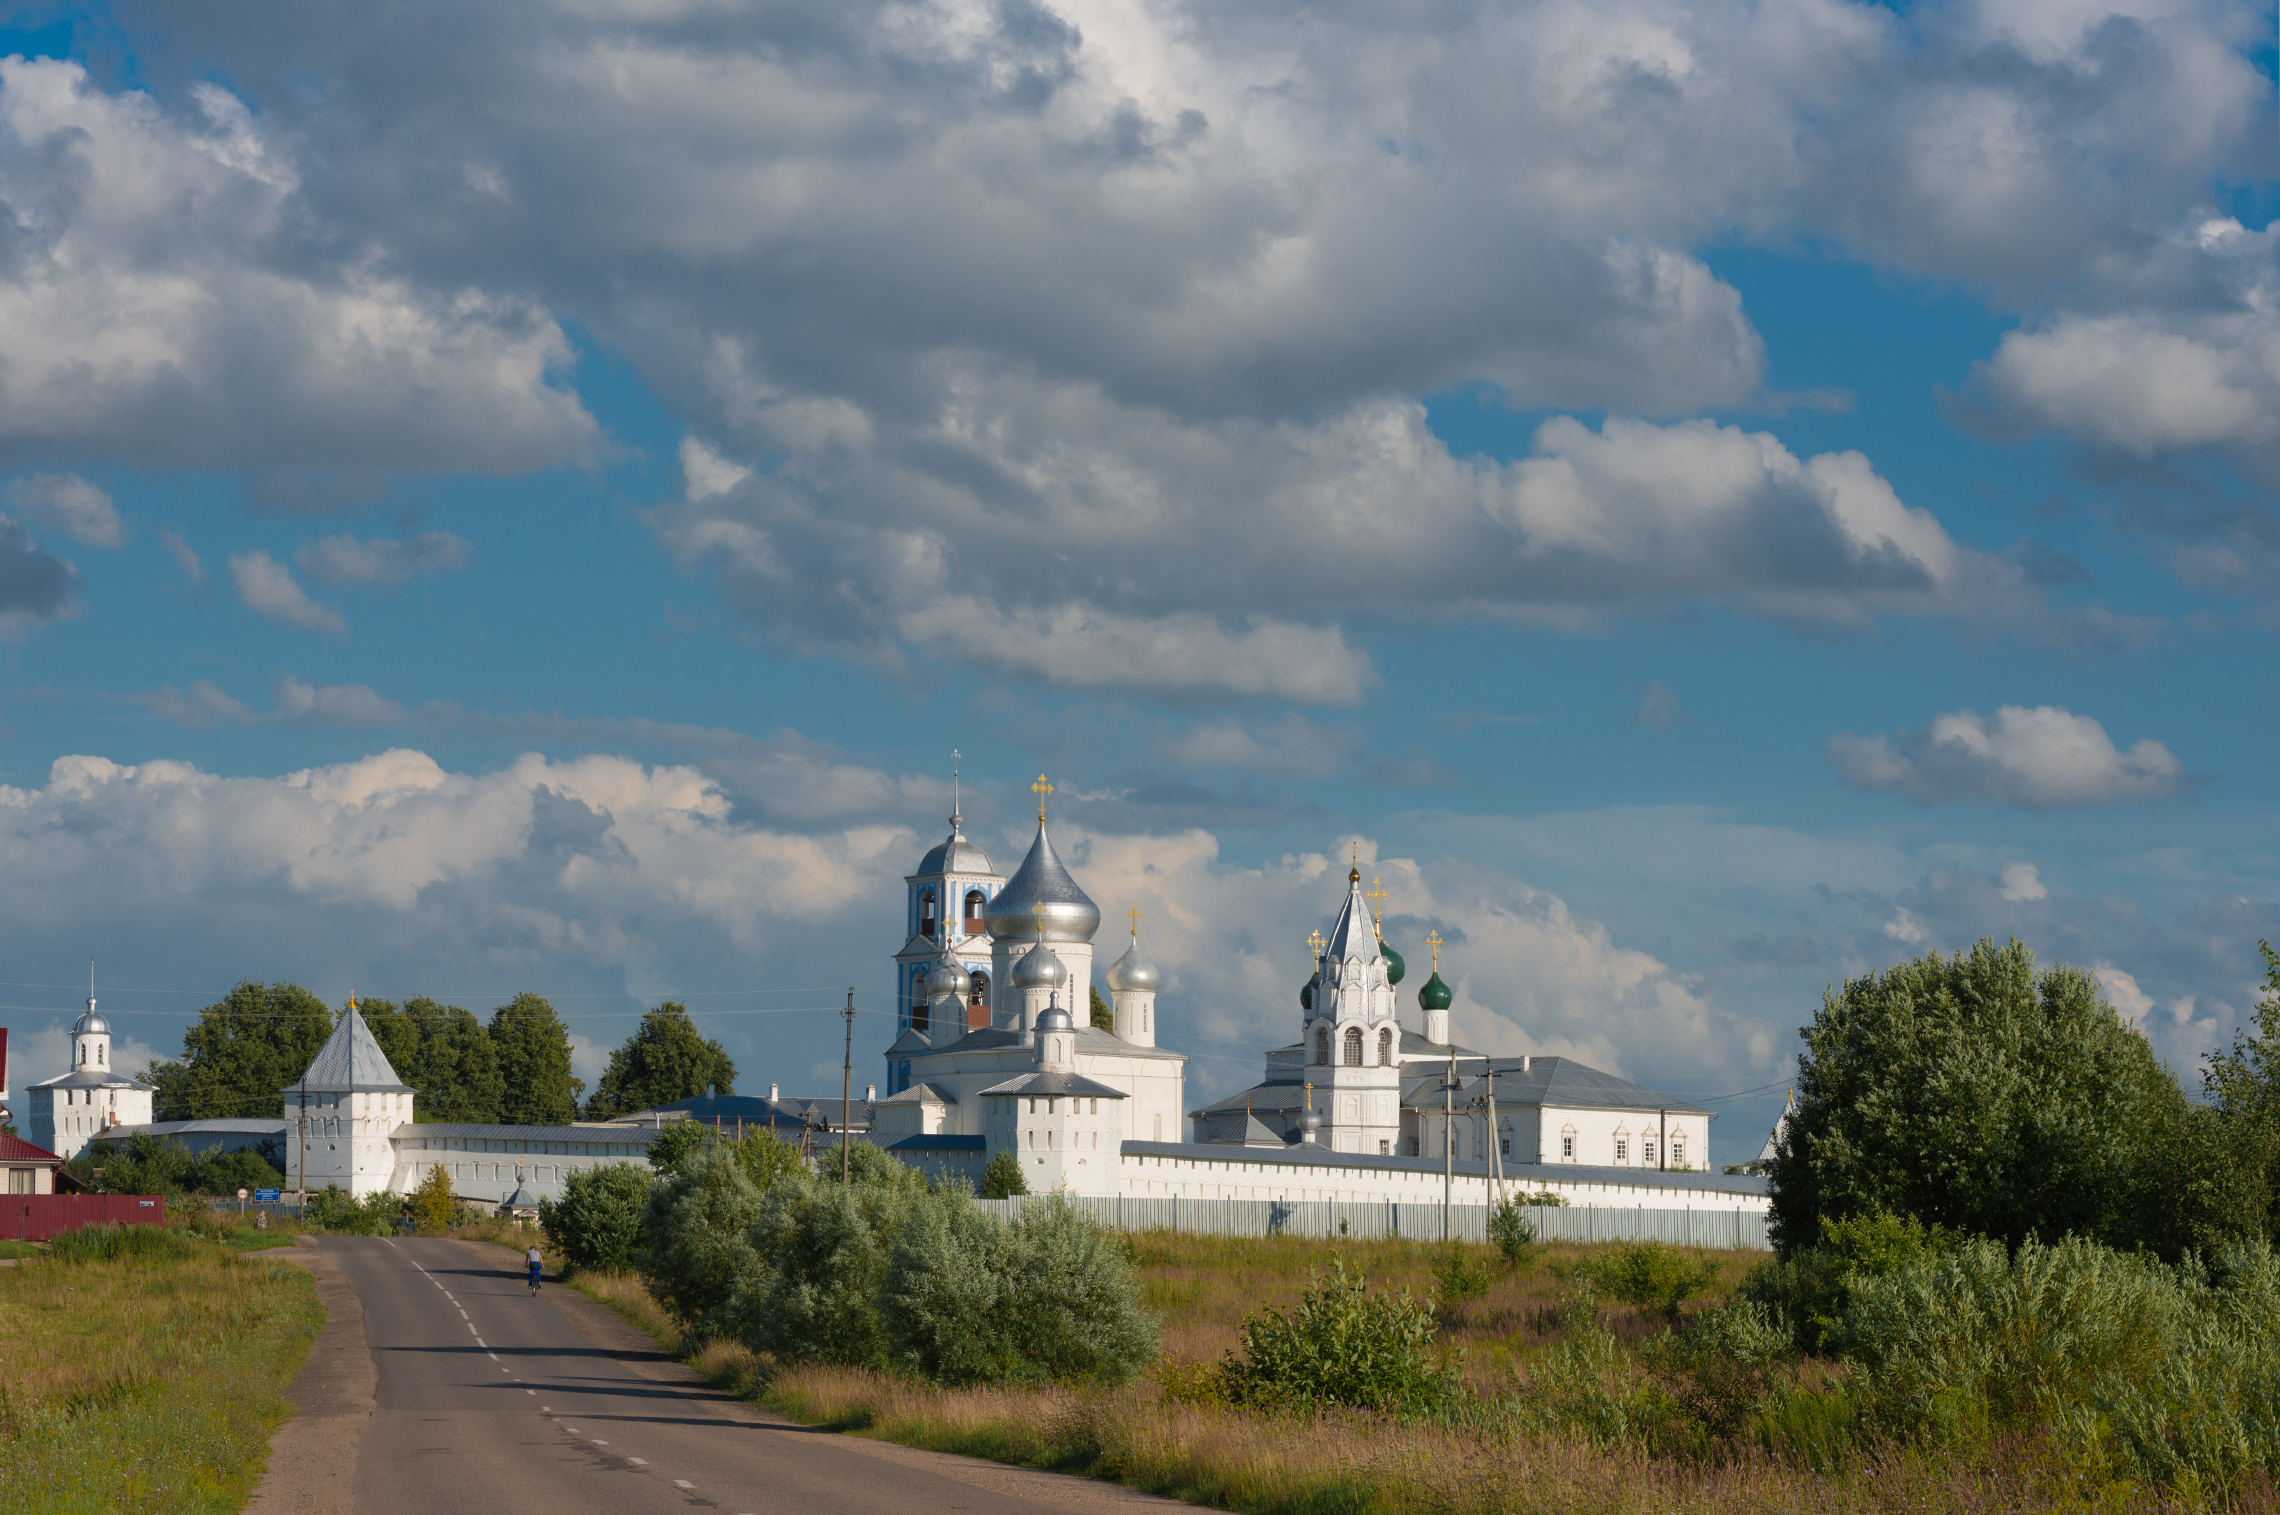 Пейзажи средней полосы. Никитский монастырь, Переславль-Залесский